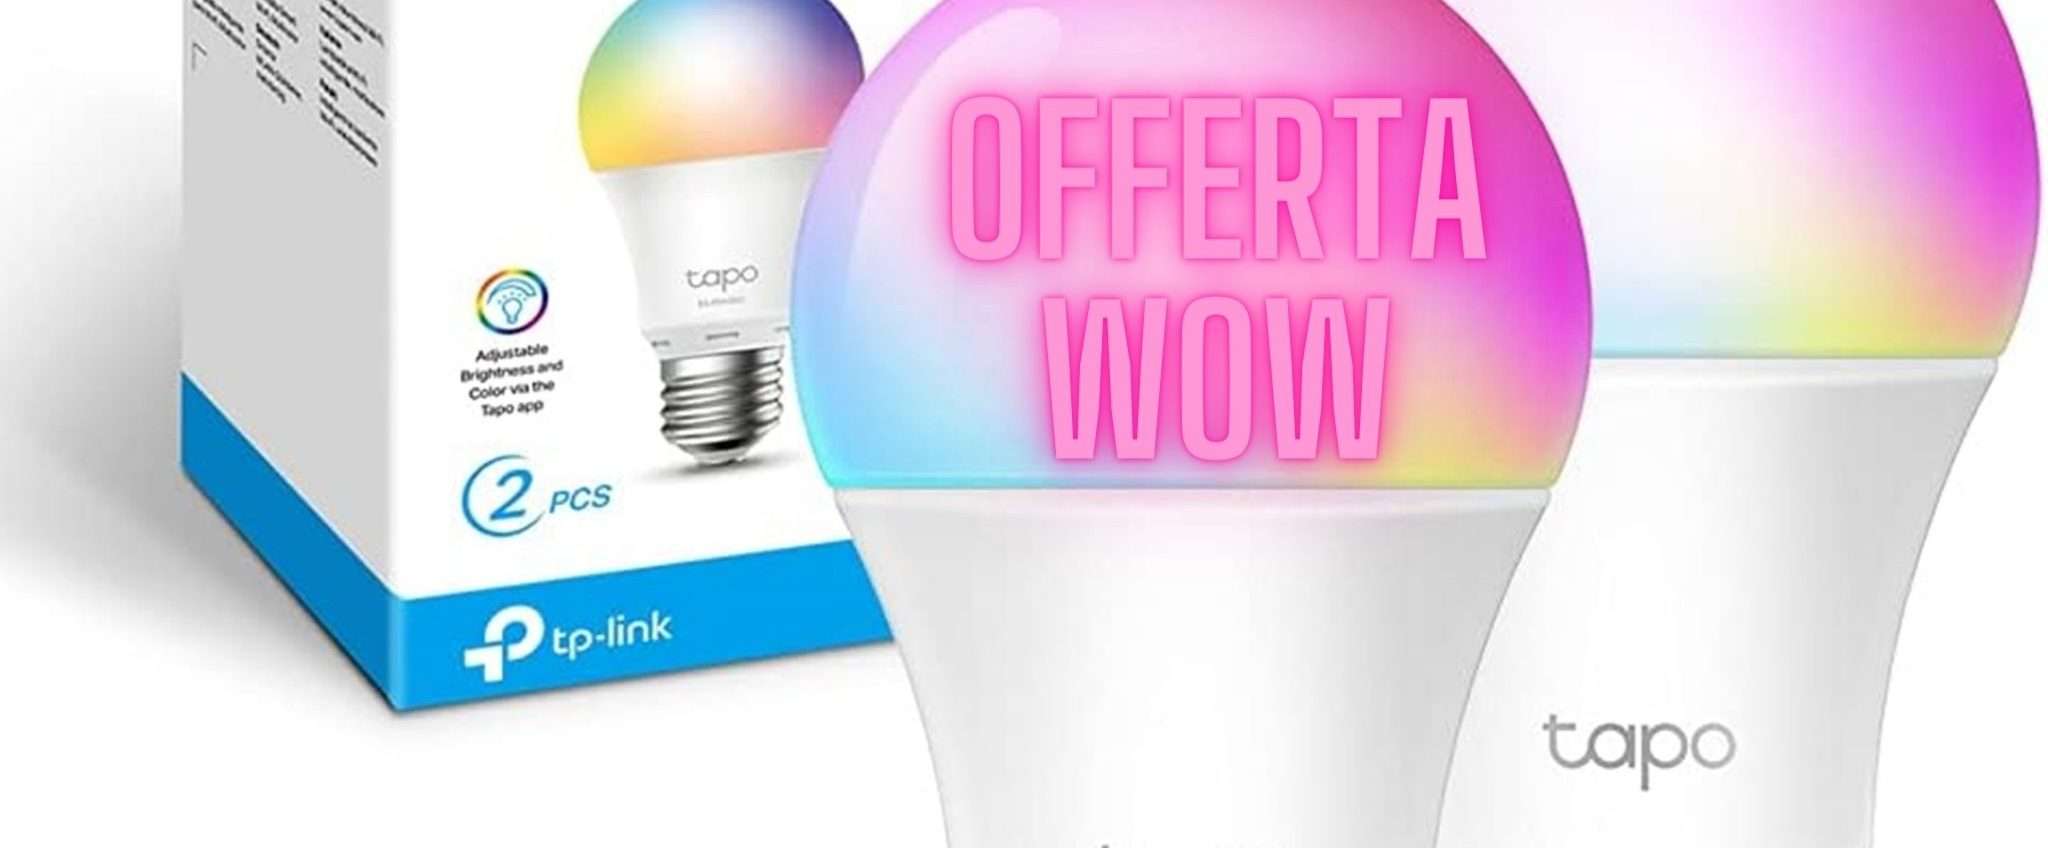 2 lampadine Smart TP-Link multicolor al prezzo ASSURDO di soli 18€